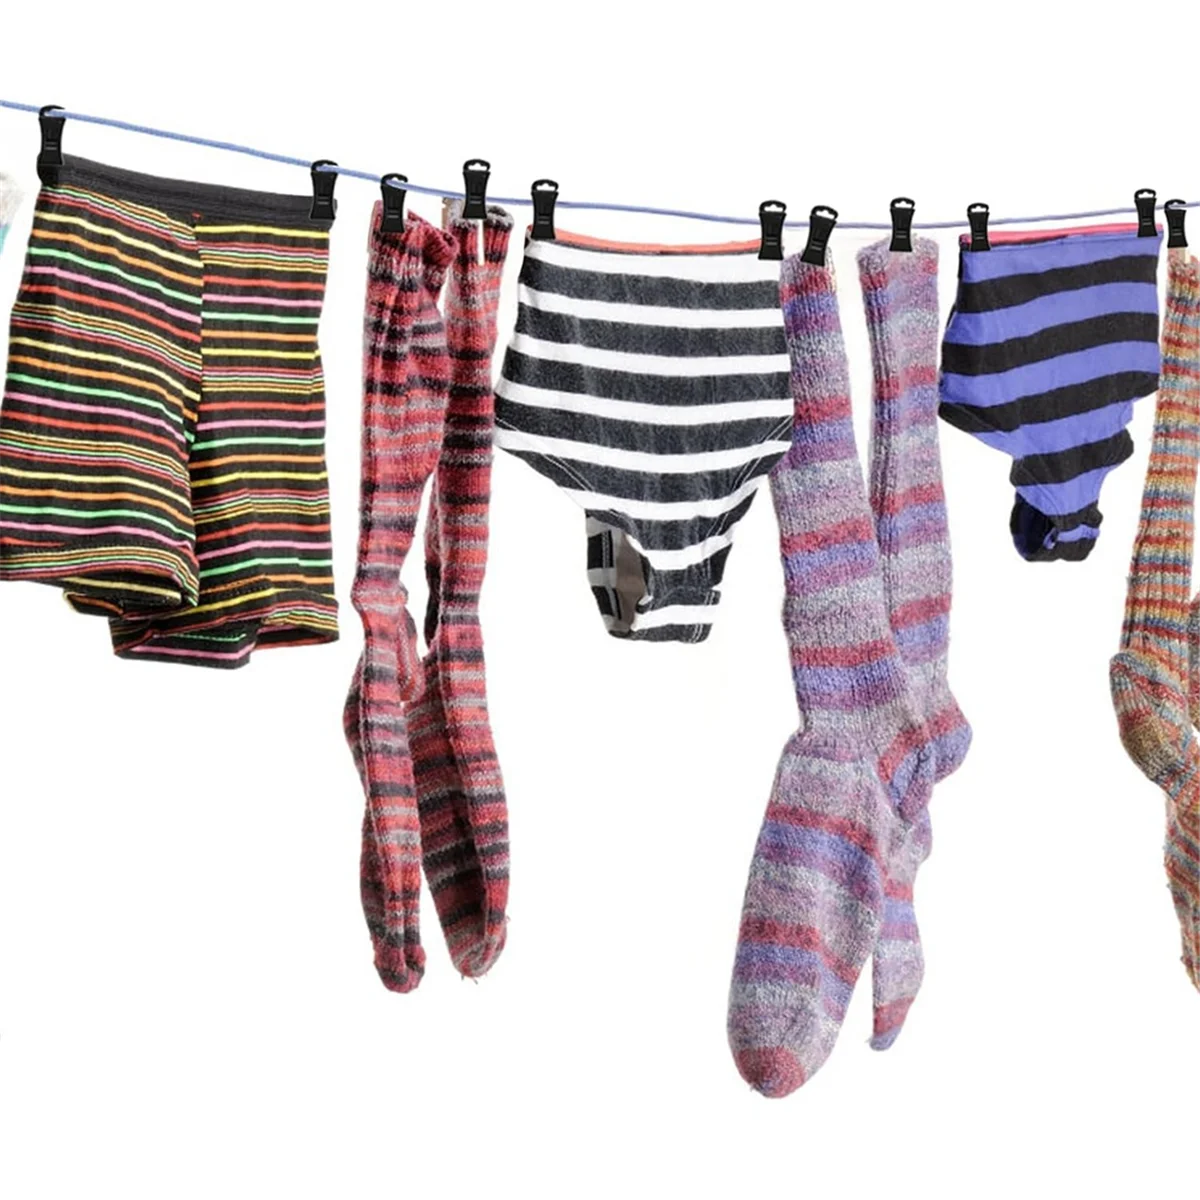 Clips de calcetines para lavadora y secadora, pinzas para ropa, pinzas para calcetines, pinzas para toallas para lavar, Clip para calcetines, 50 unidades